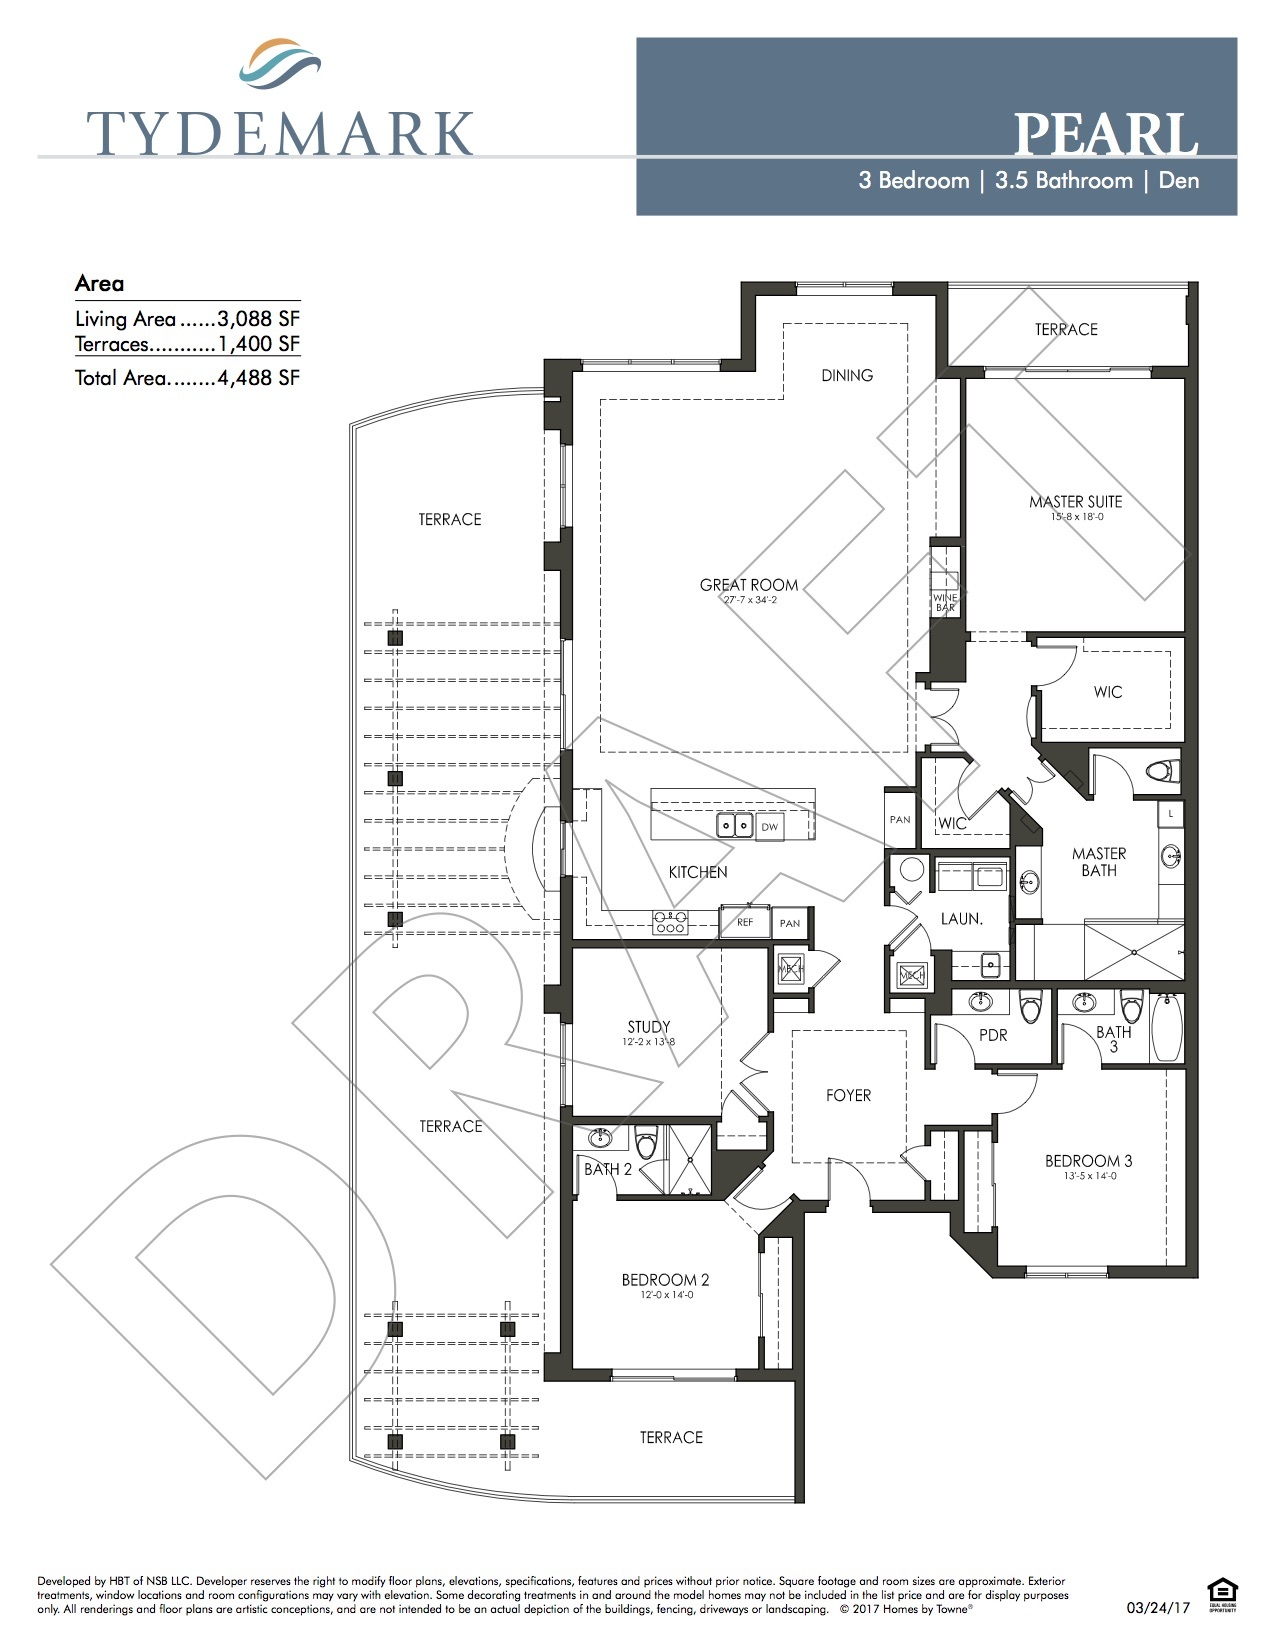 Pearl floor plan — view layout below